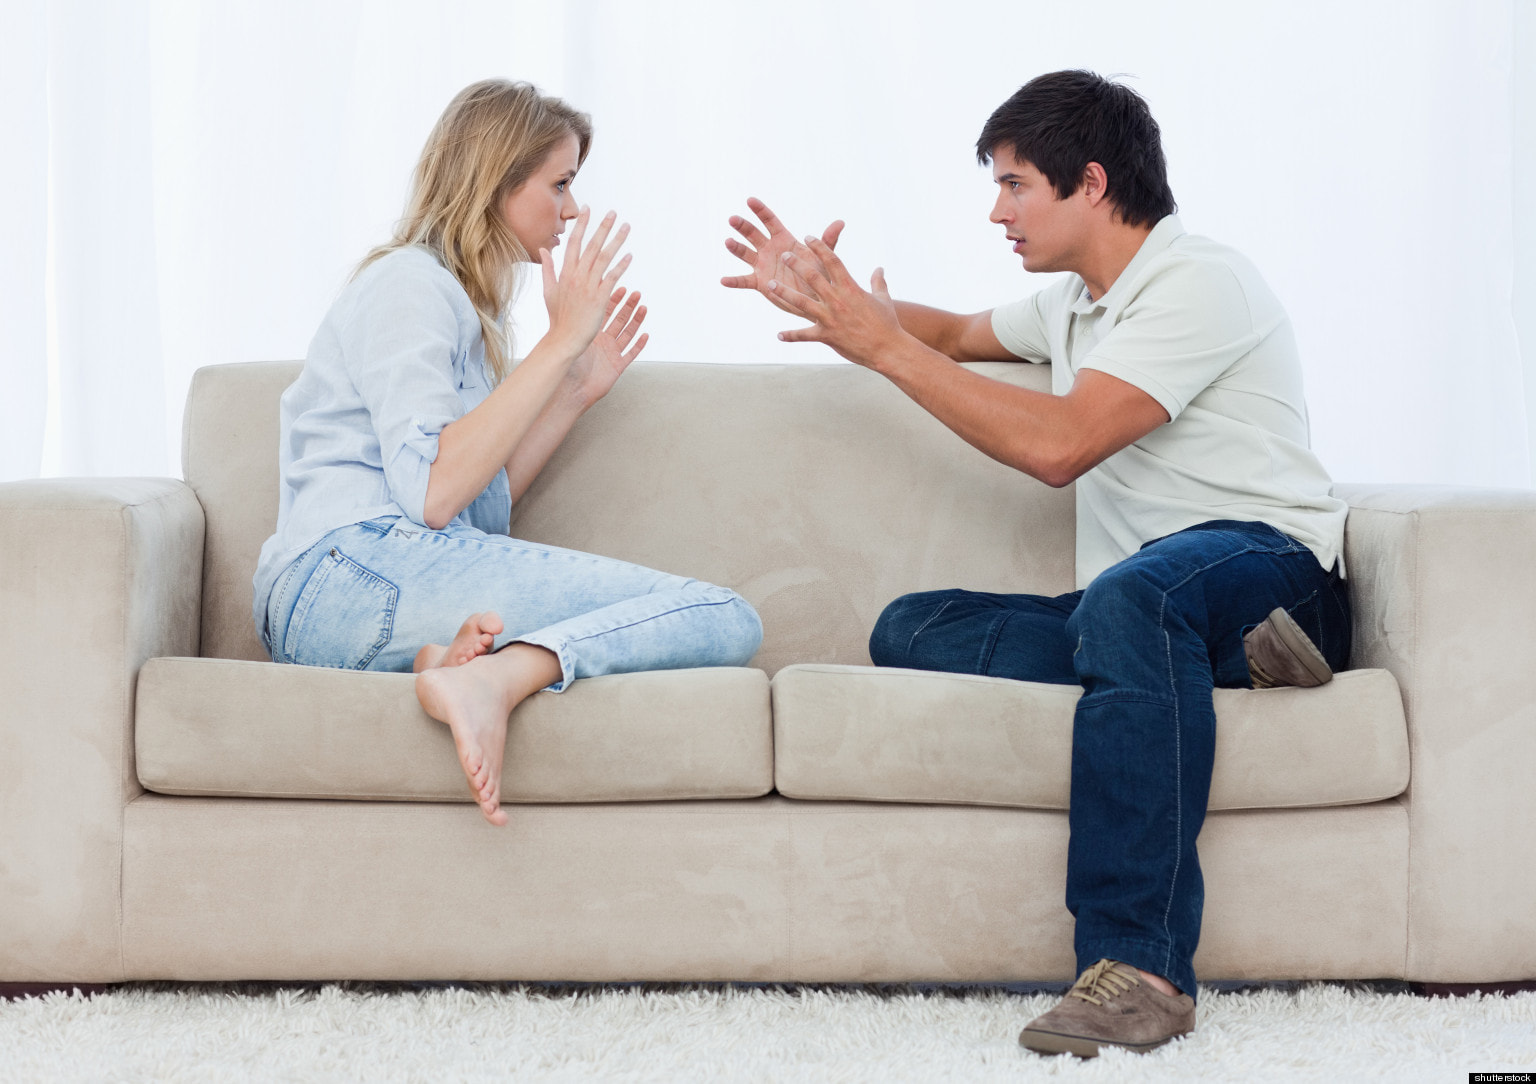 5 ფრაზა - თუ საყვარელი მამაკაცი საუბრის დრო მათ იყენებს, ურთიერთობა საფრთხეშია